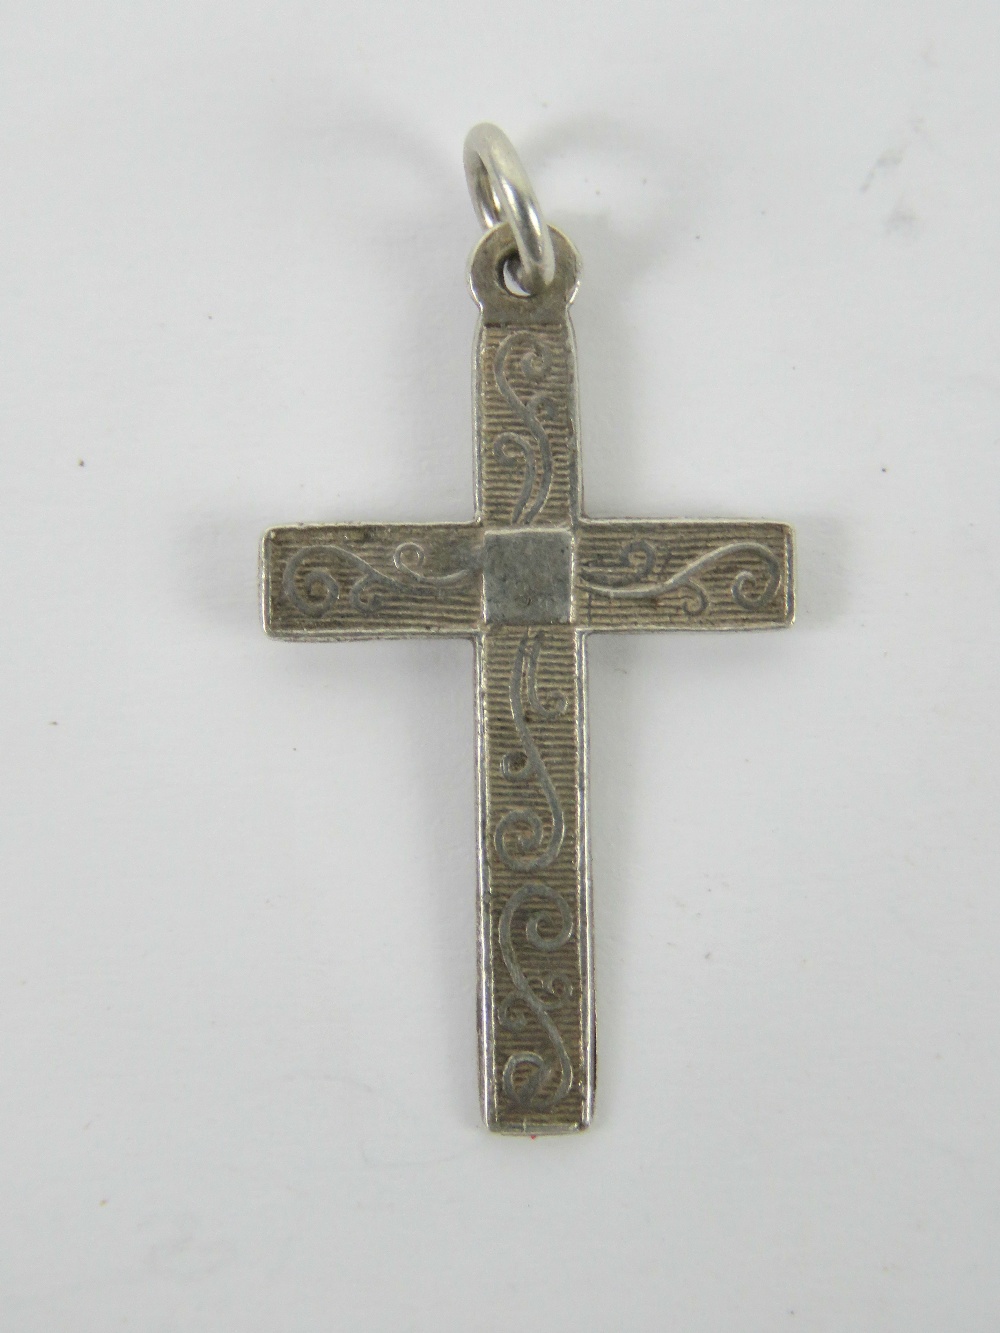 A silver crucifix pendant having scrolli